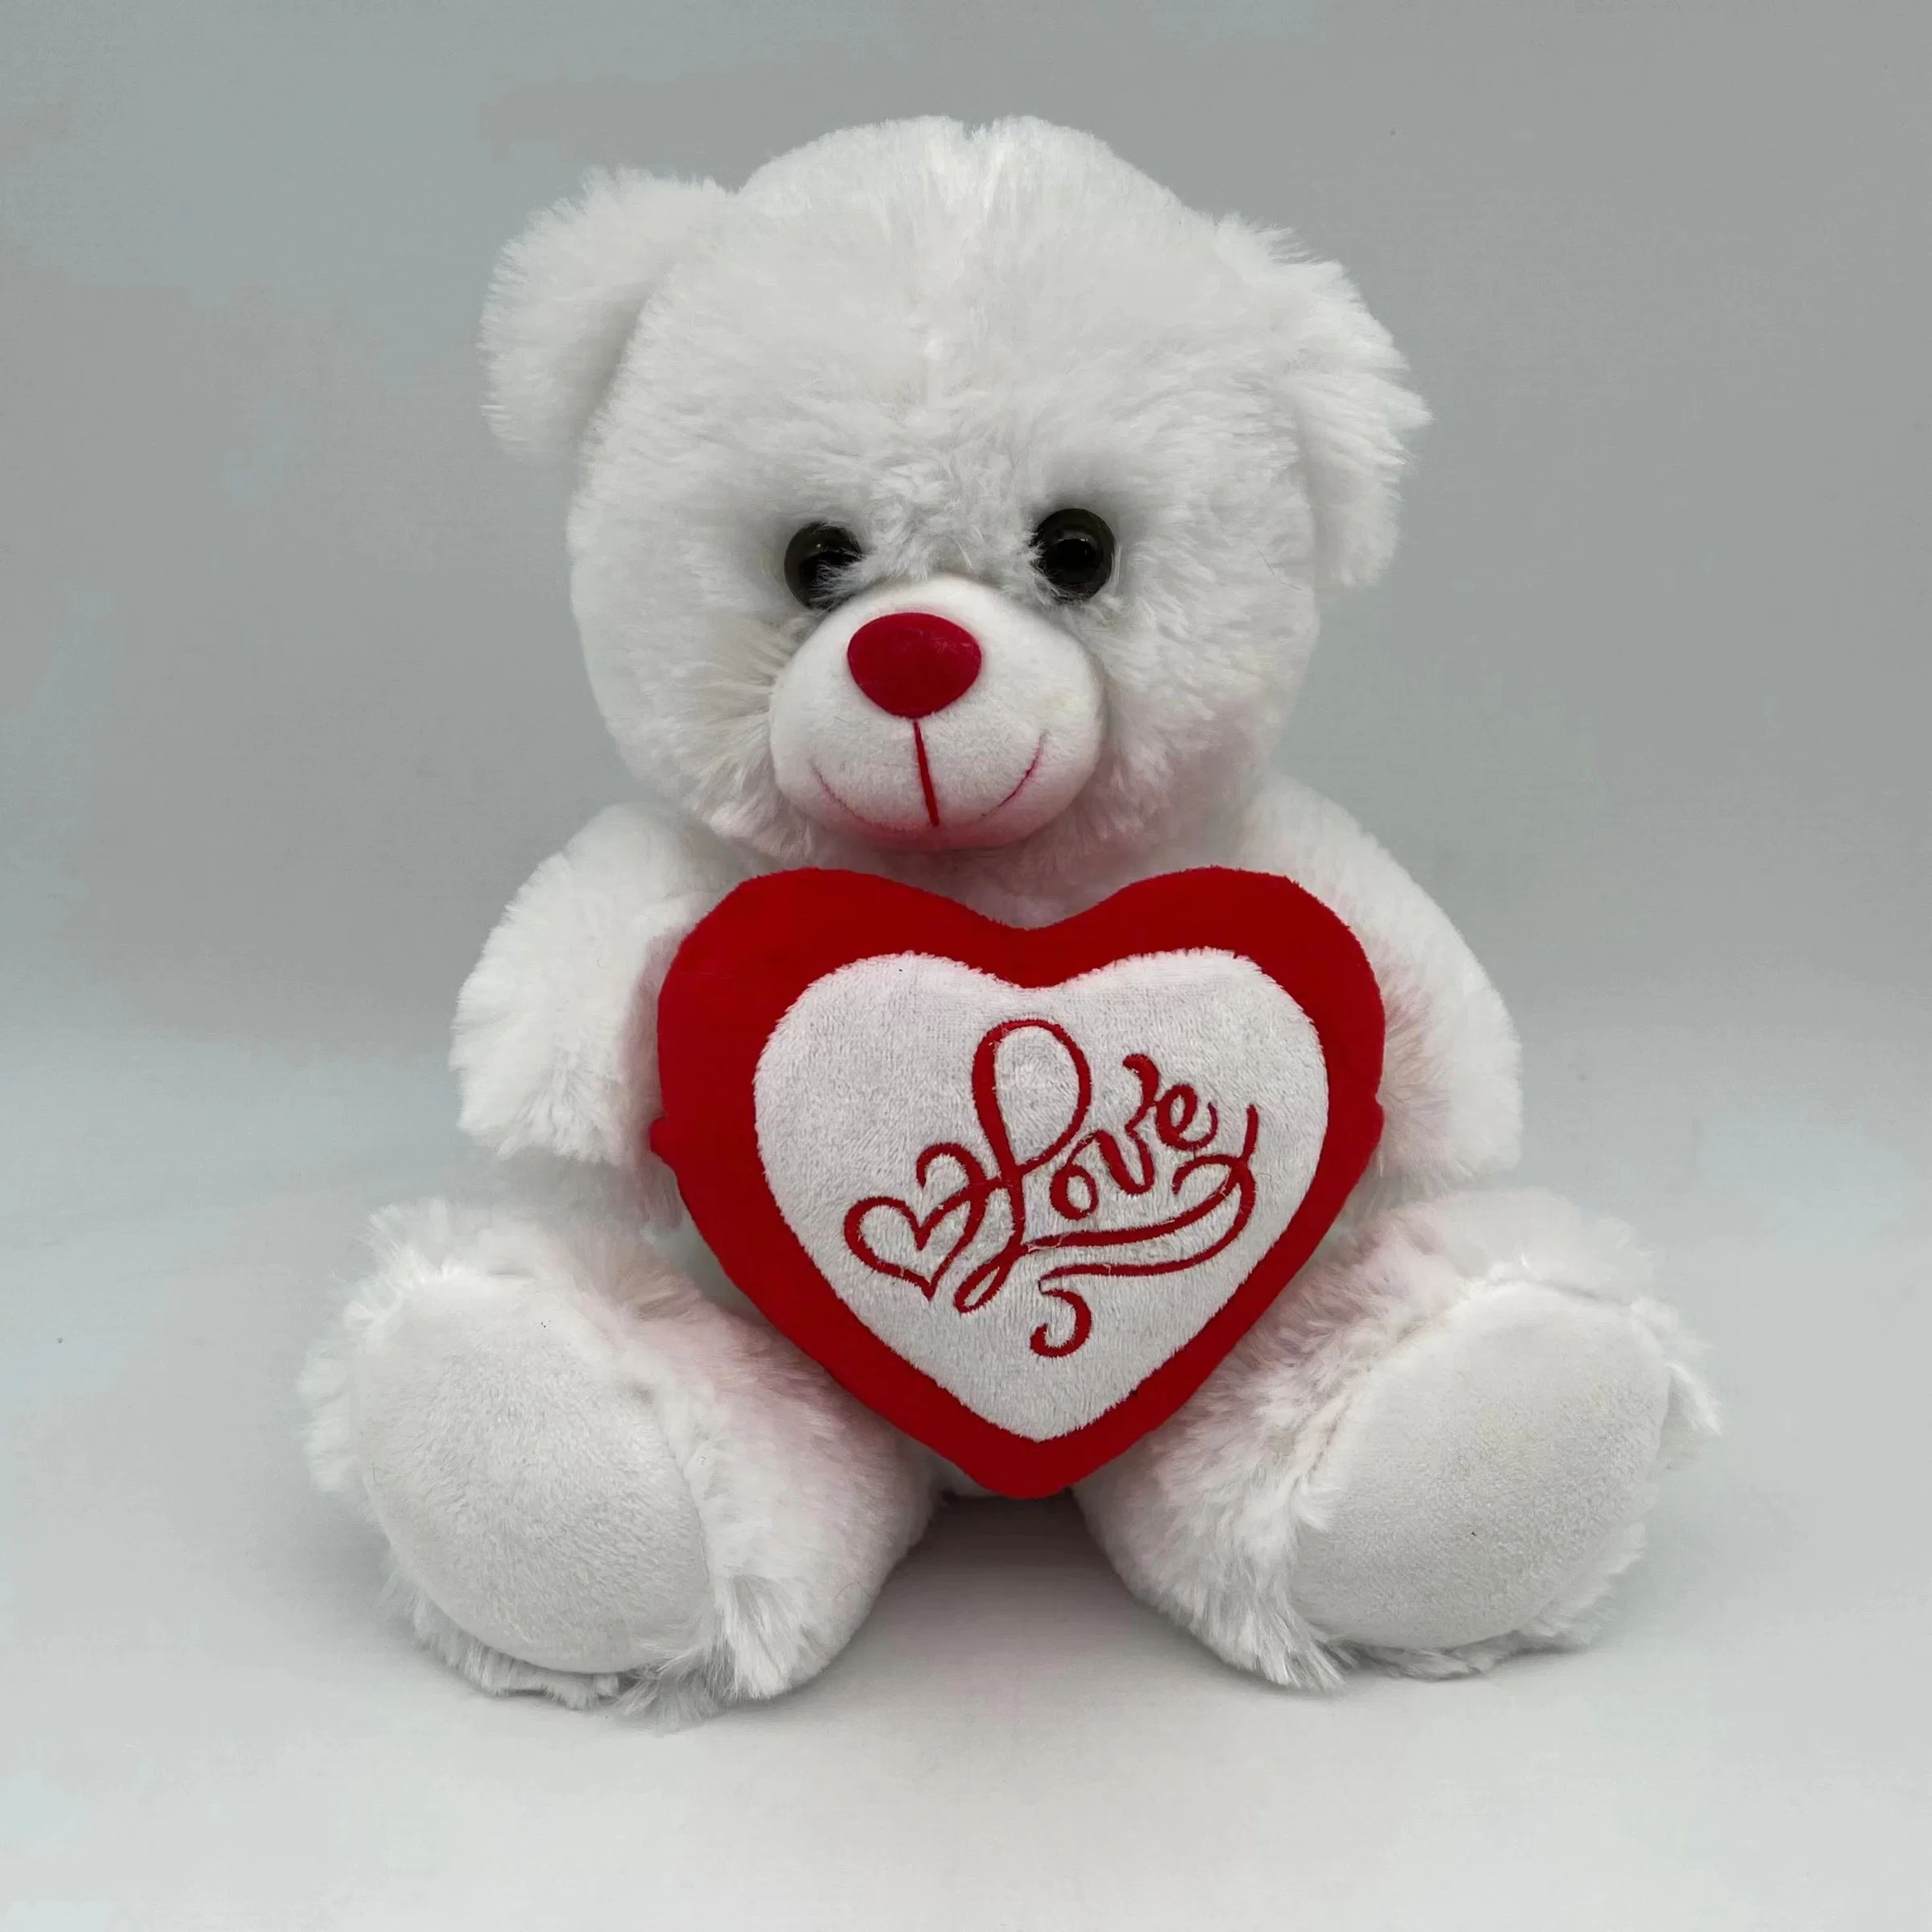 Valentine gefüllt 22cm Bär W / Herz Plüsch Spielzeug mit rotem Band / gefüllt Weiches Plüsch Panda Spielzeug mit Herz für Valentinstag